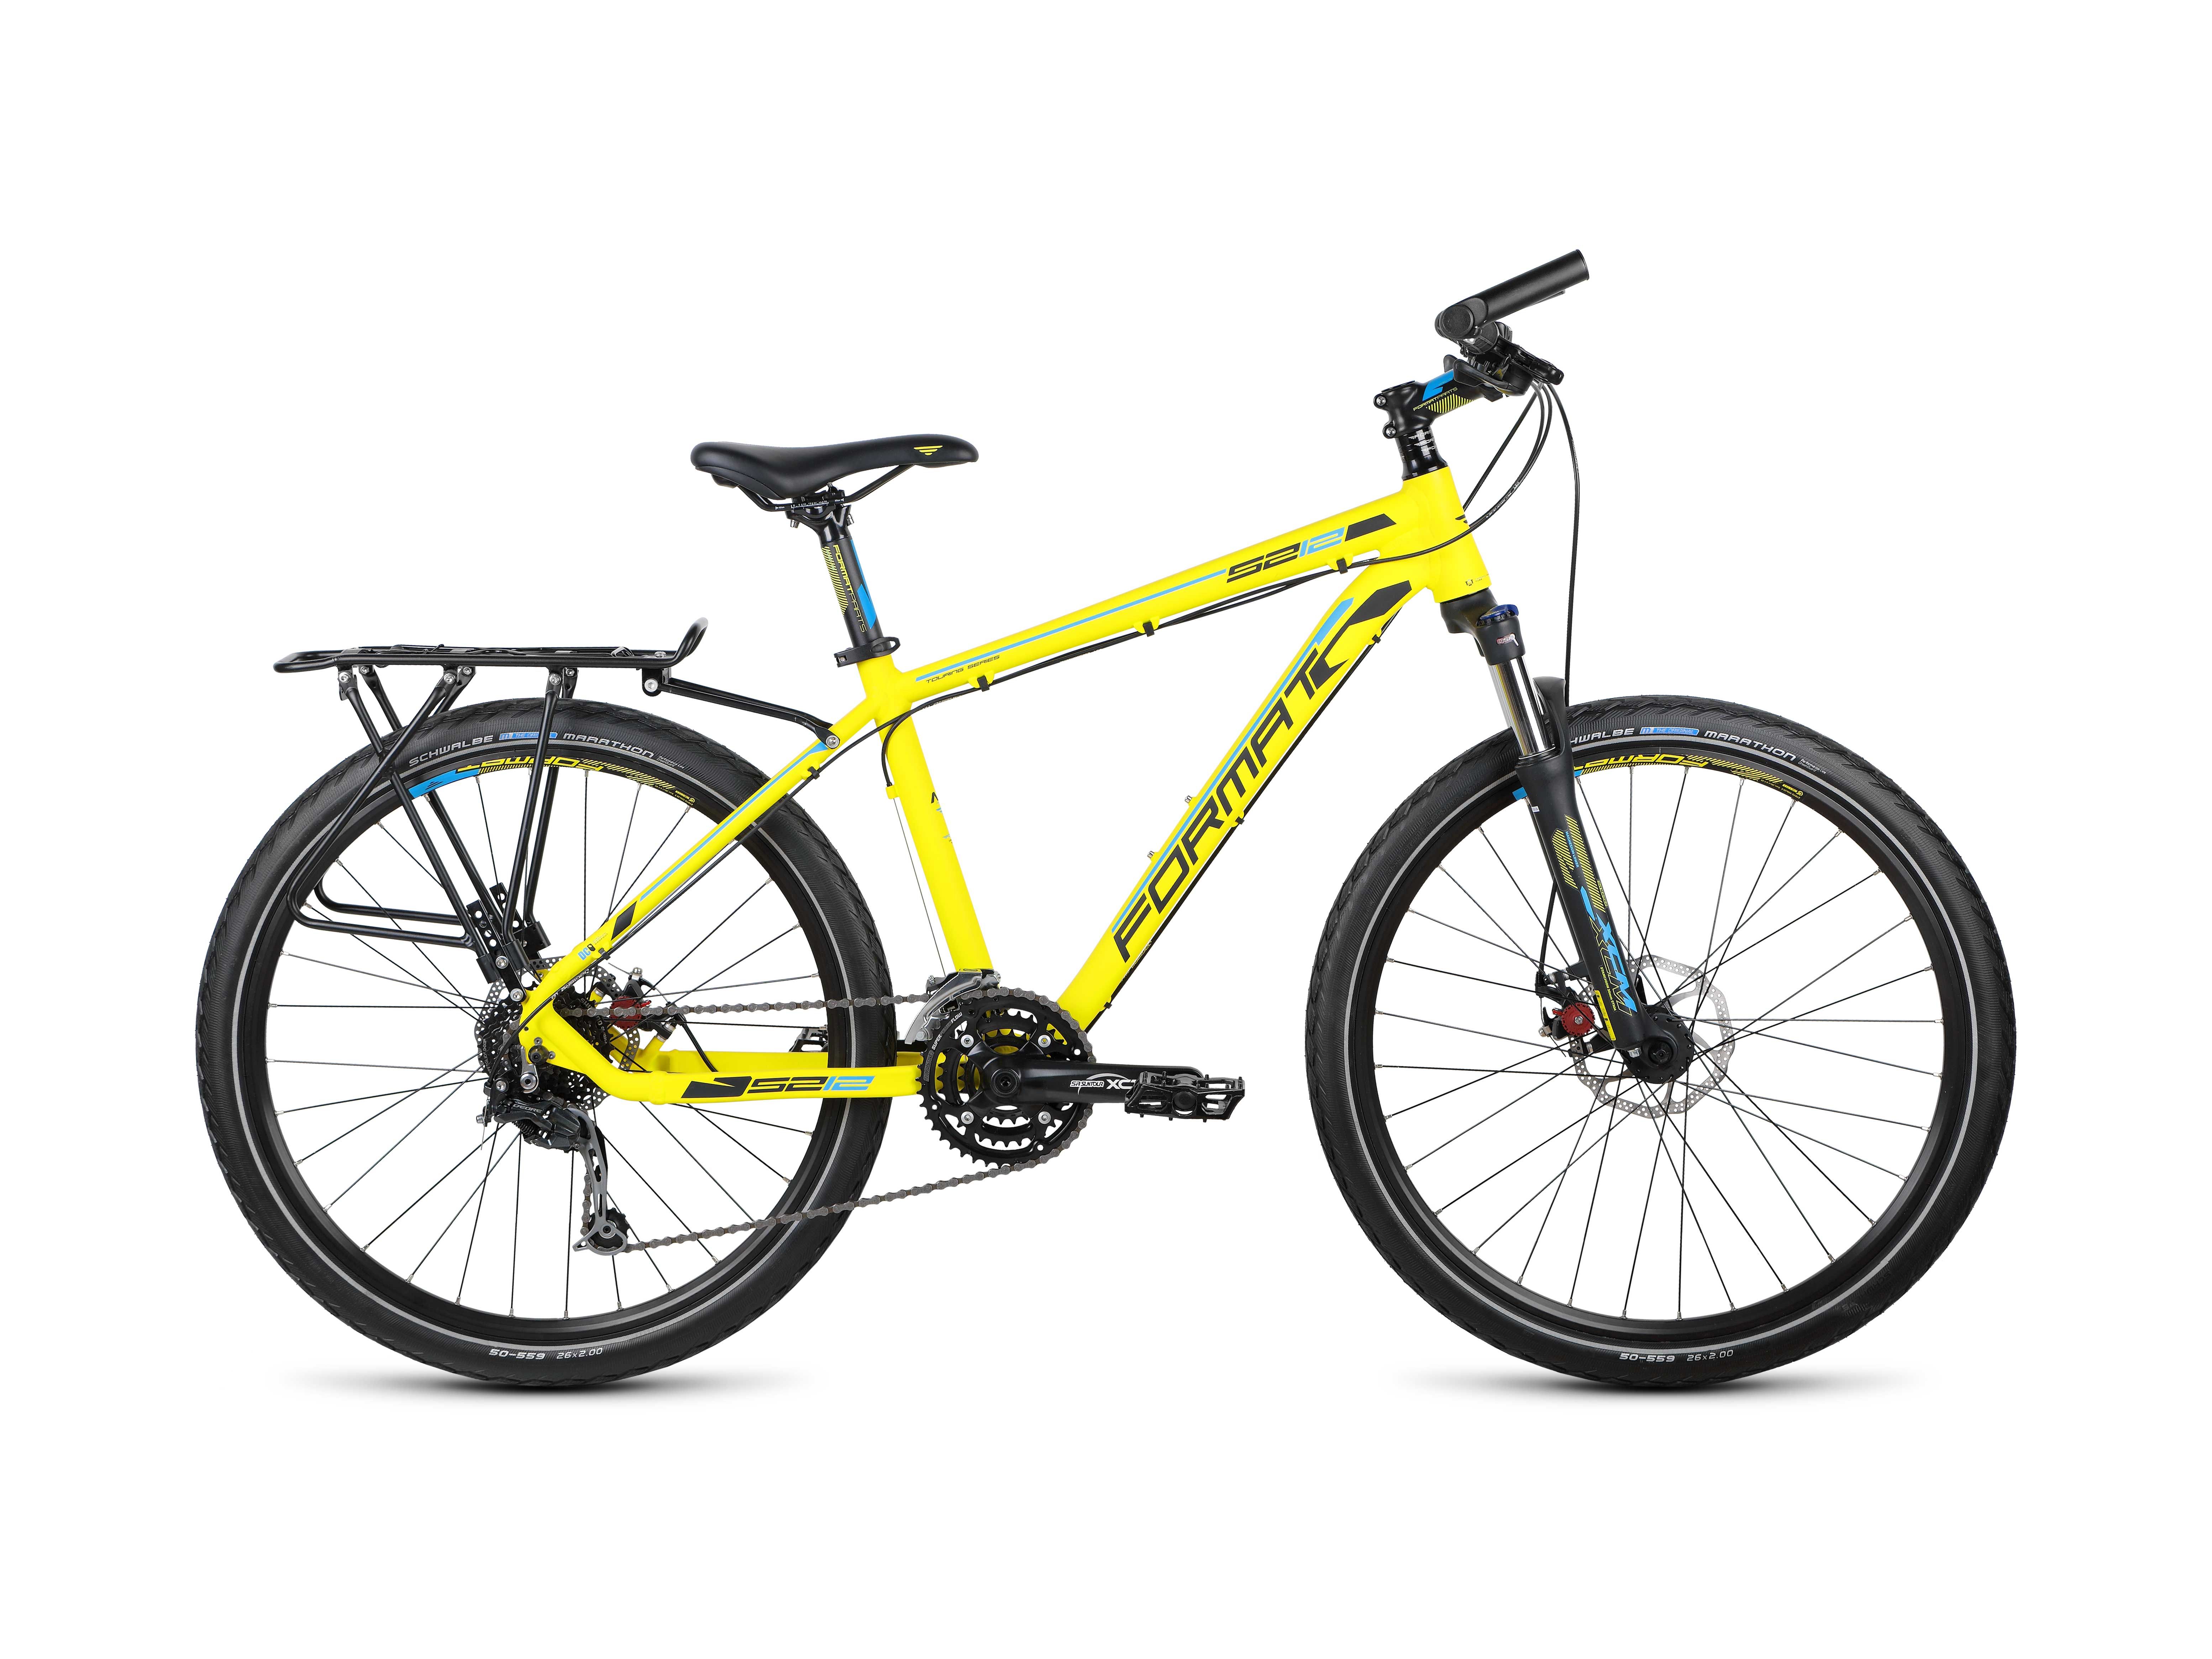  Отзывы о Горном велосипеде Format 5212 2015